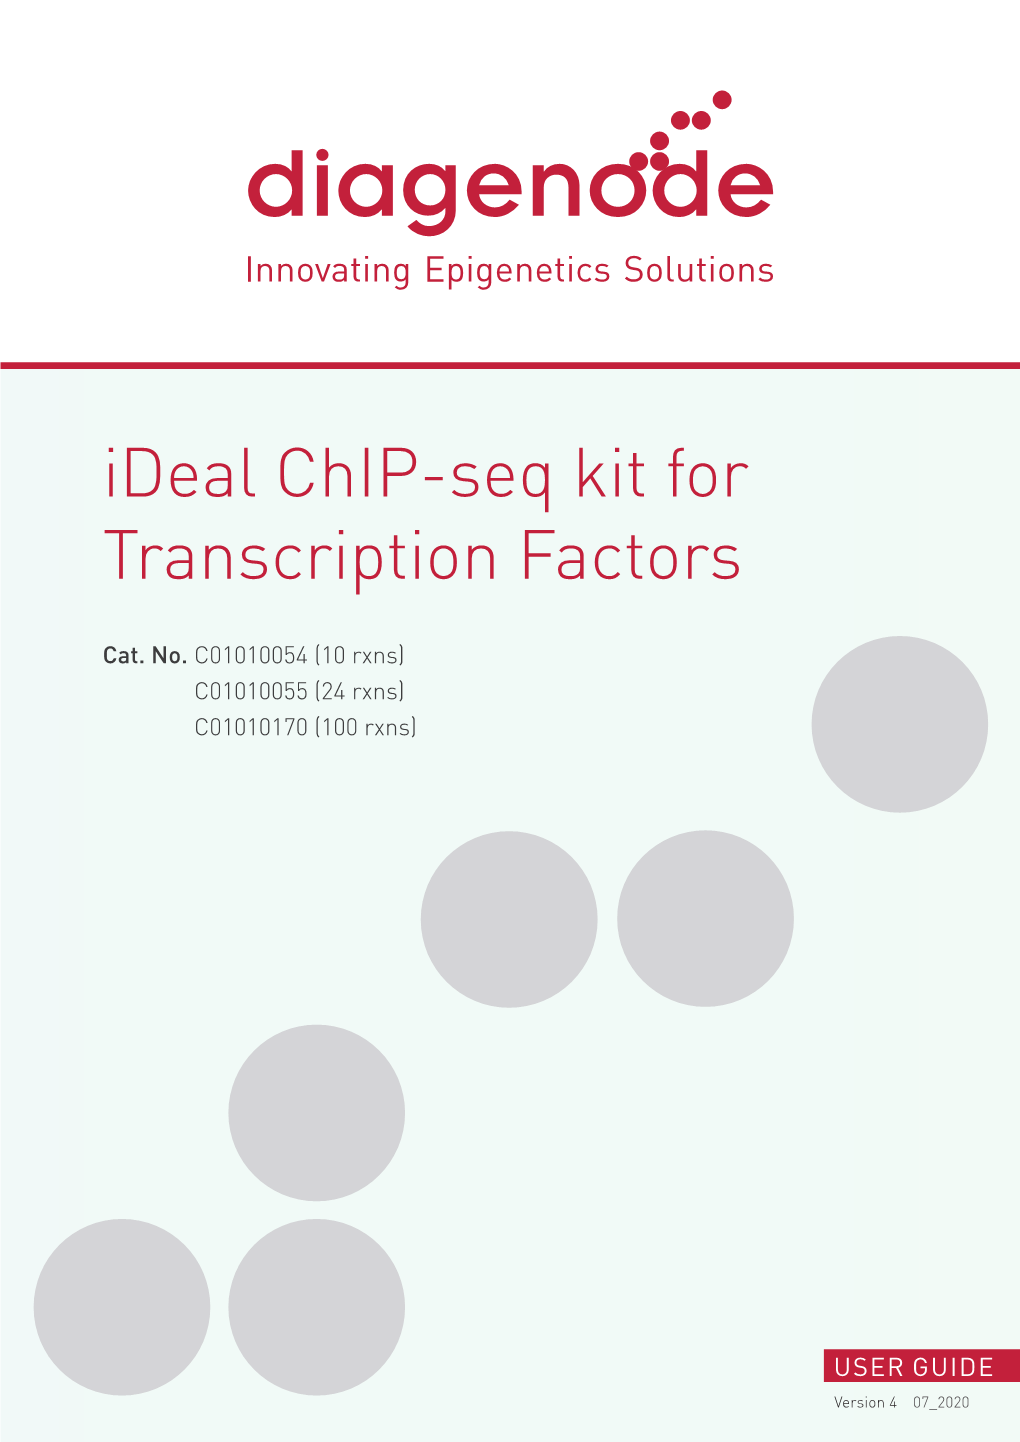 Ideal Chip-Seq Kit for Transcription Factors